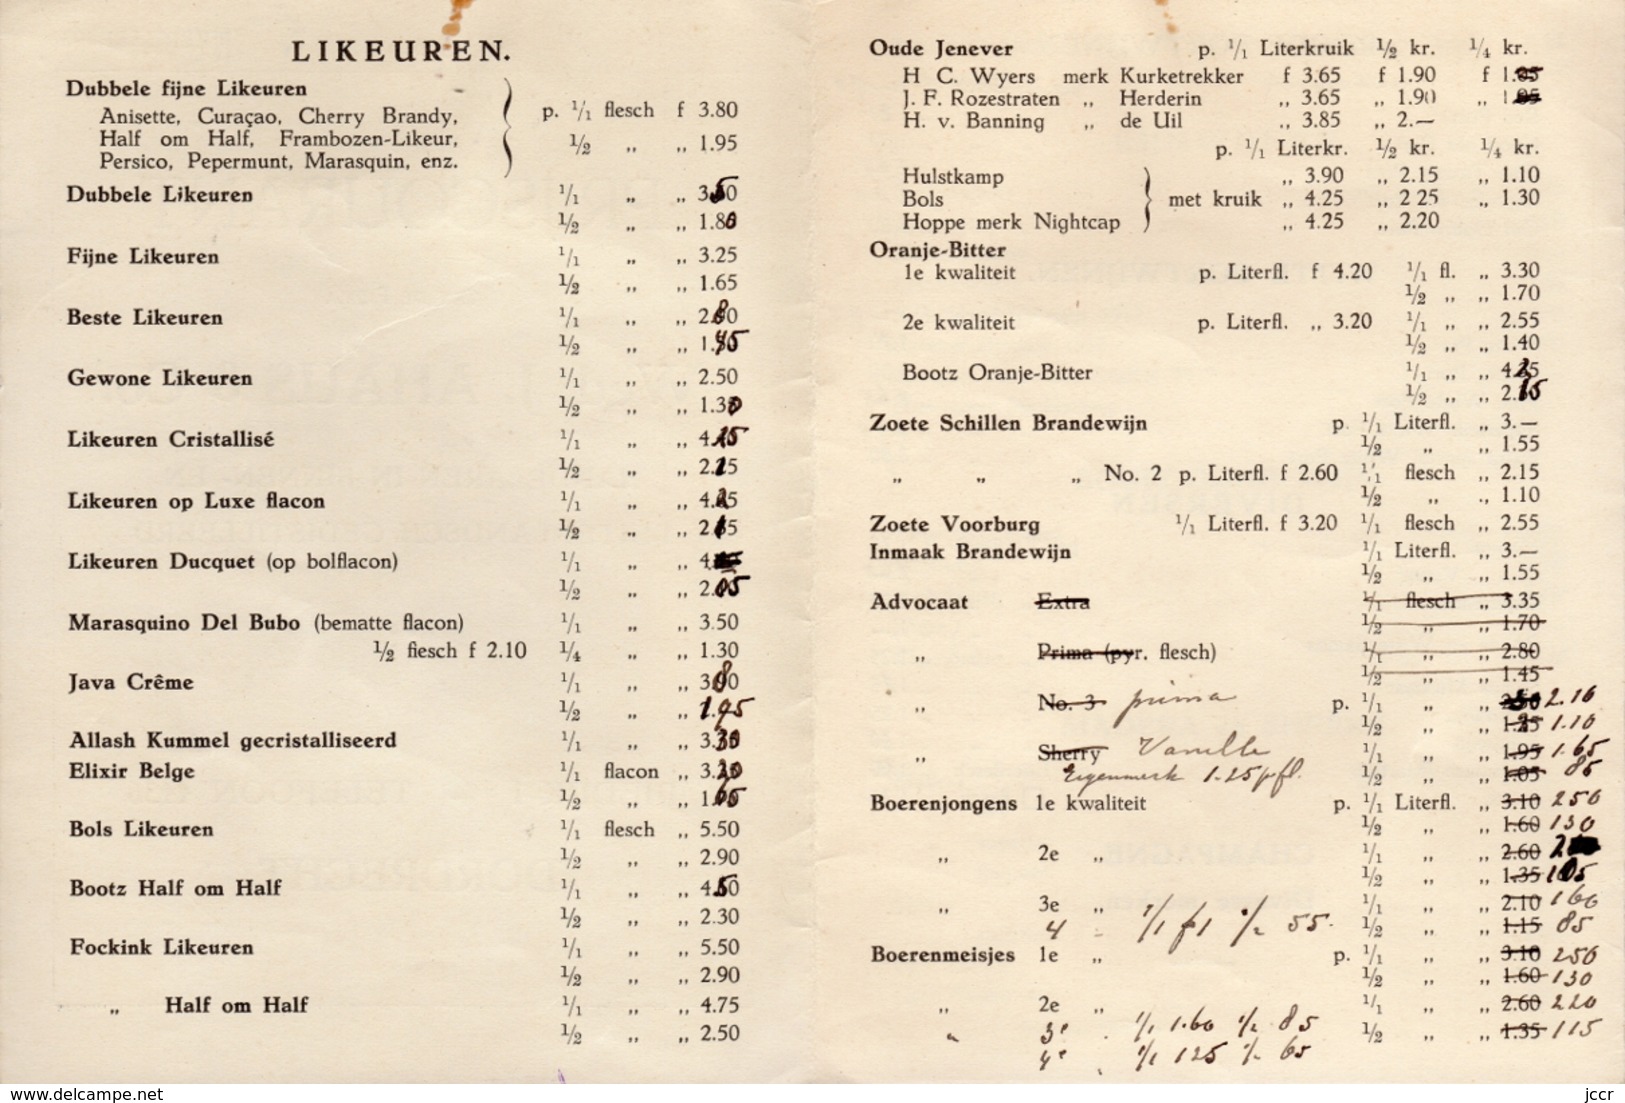 Prijscourant Nov. 1936 Van De Firma Wed. J. Ahaus & Co. Handelaren In Binnen En Buitenlandsch Gedistilleerd Dordrecht - Cucina & Vini